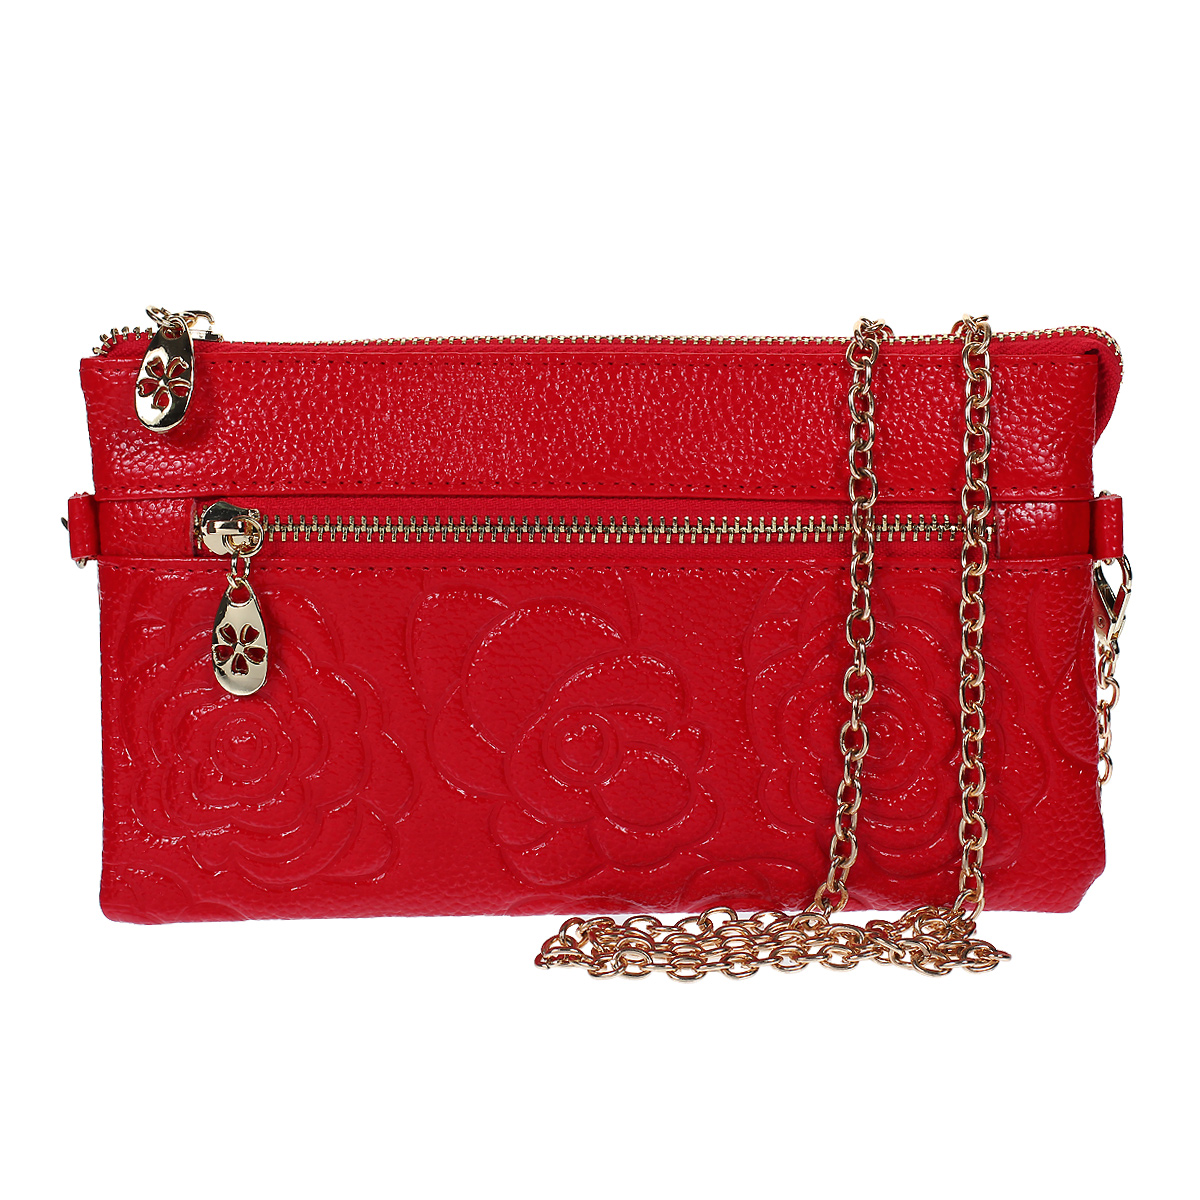 Клатч "Fancy's Bag", цвет: красный. K-801-12 - купить по доступной цене с доставкой на дом в интернет магазине OZON.ru